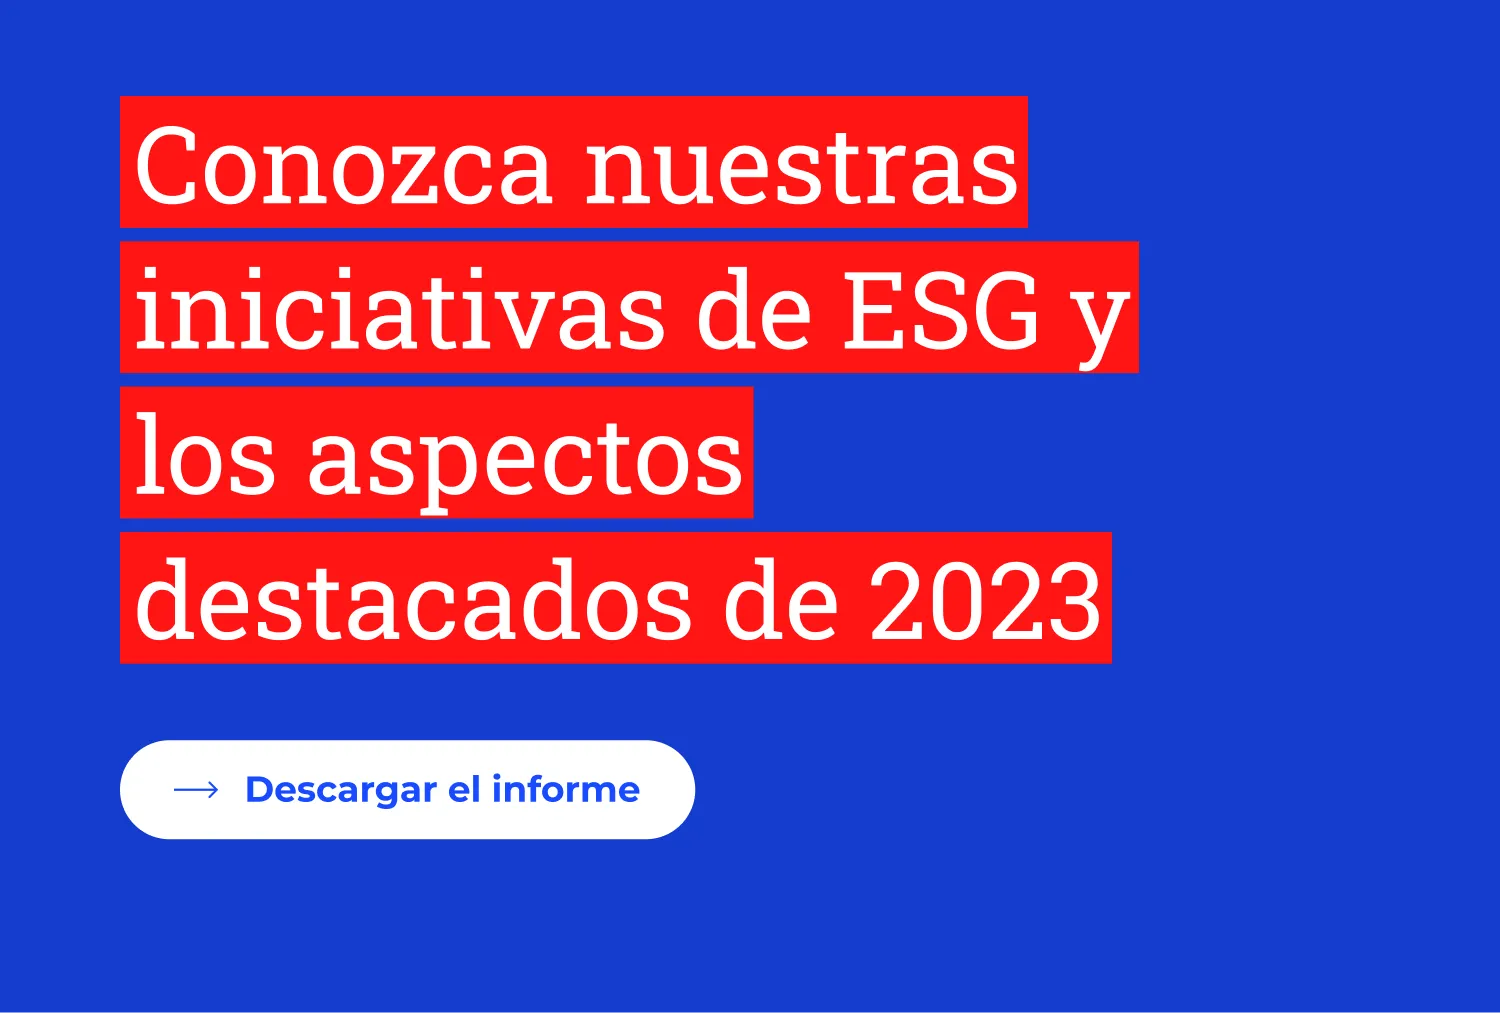 Conozca nuestras iniciativas de ESG y los aspectos destacados de 2023. Descargar el informe